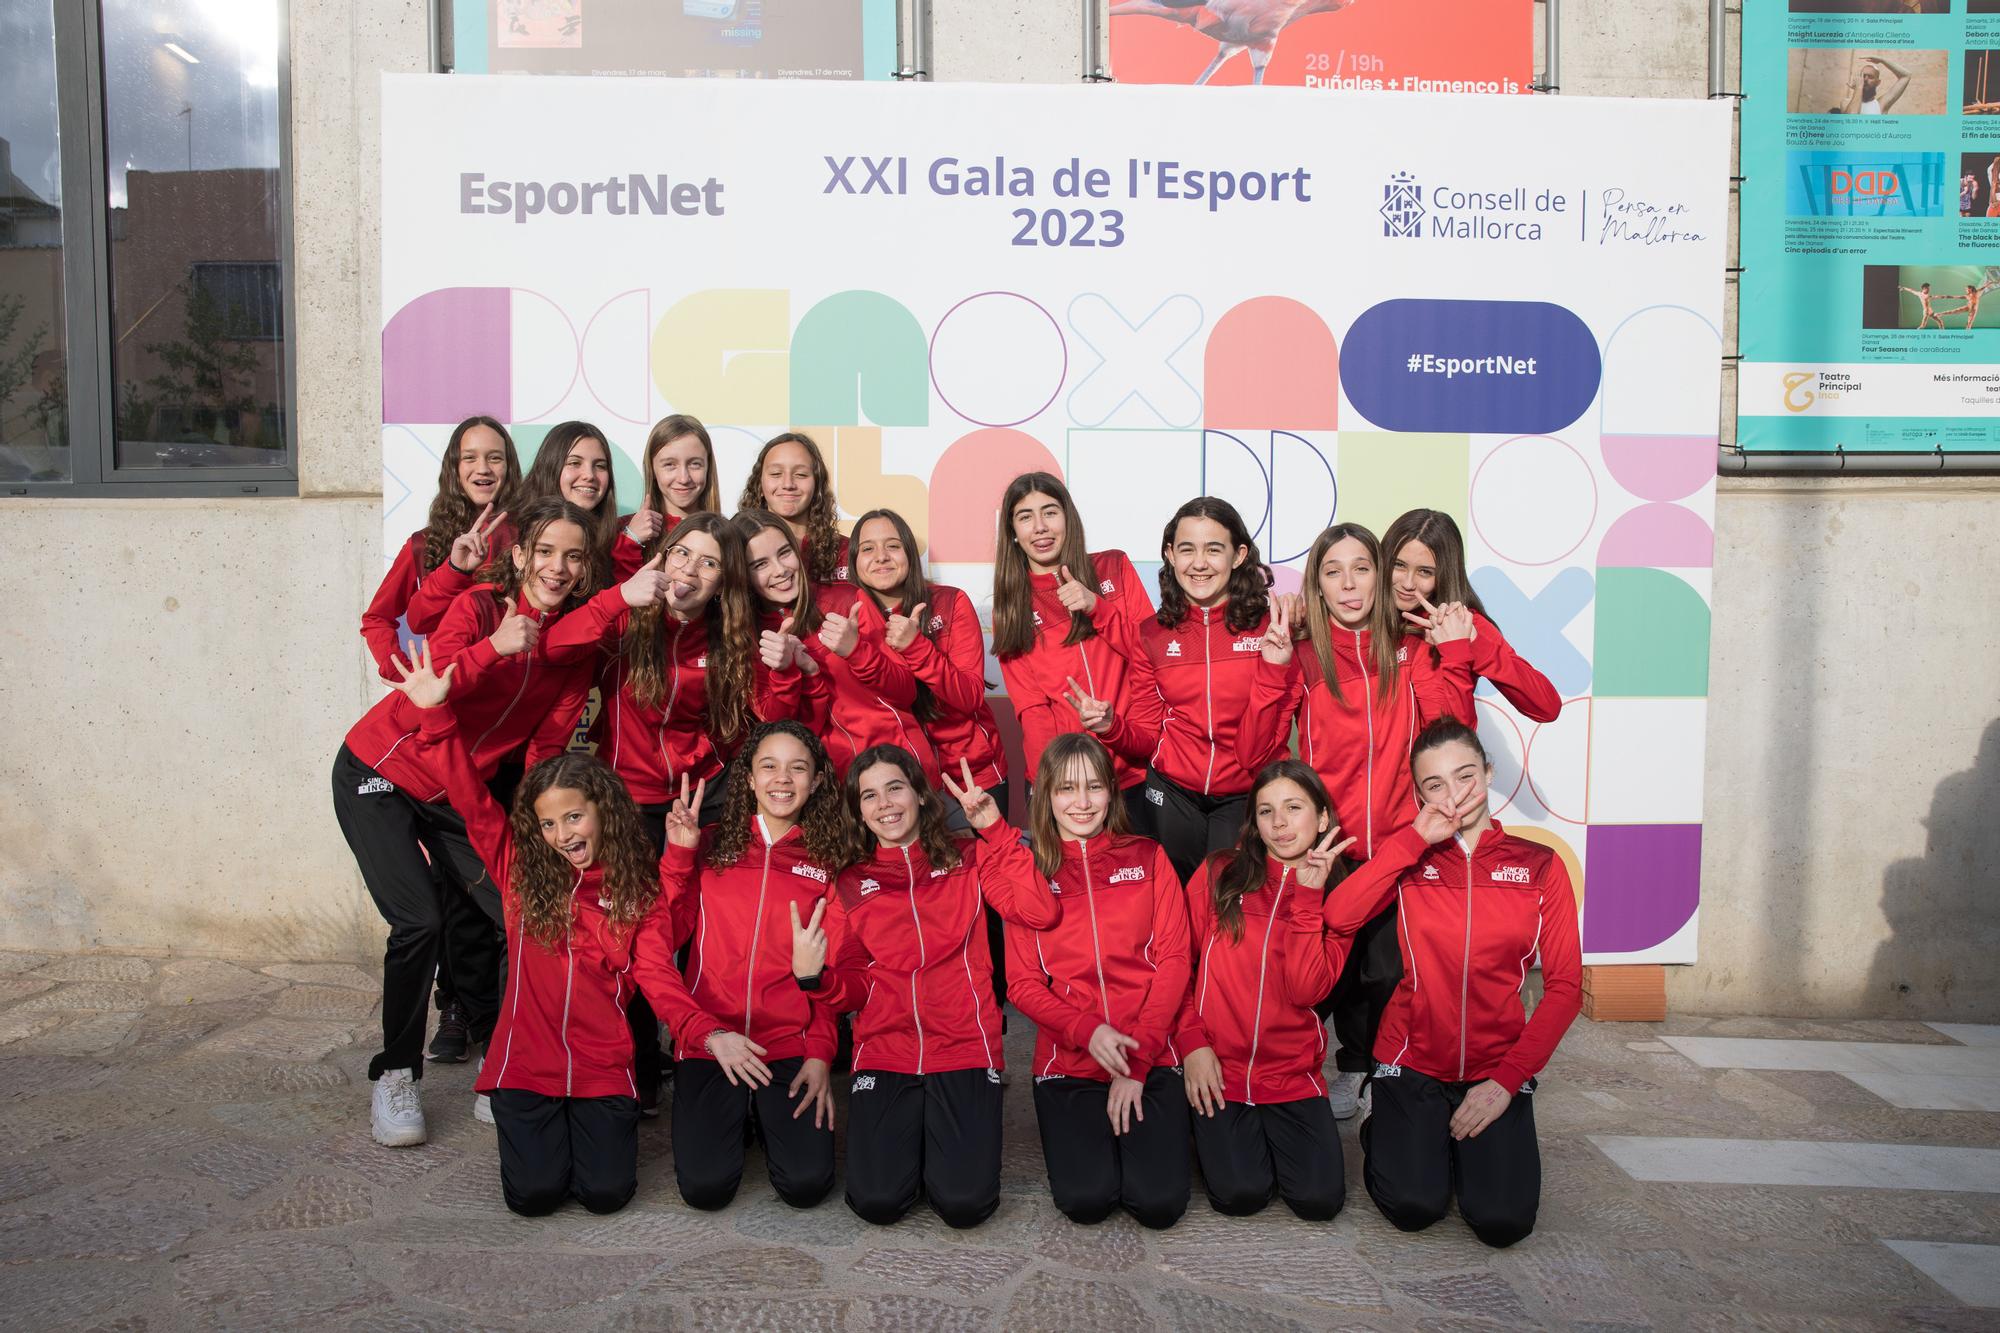 La presidenta Catalina Cladera pone en valor a los jóvenes campeones en el marco del homenaje de la XXI Gala de l’Esport del Consell de Mallorca